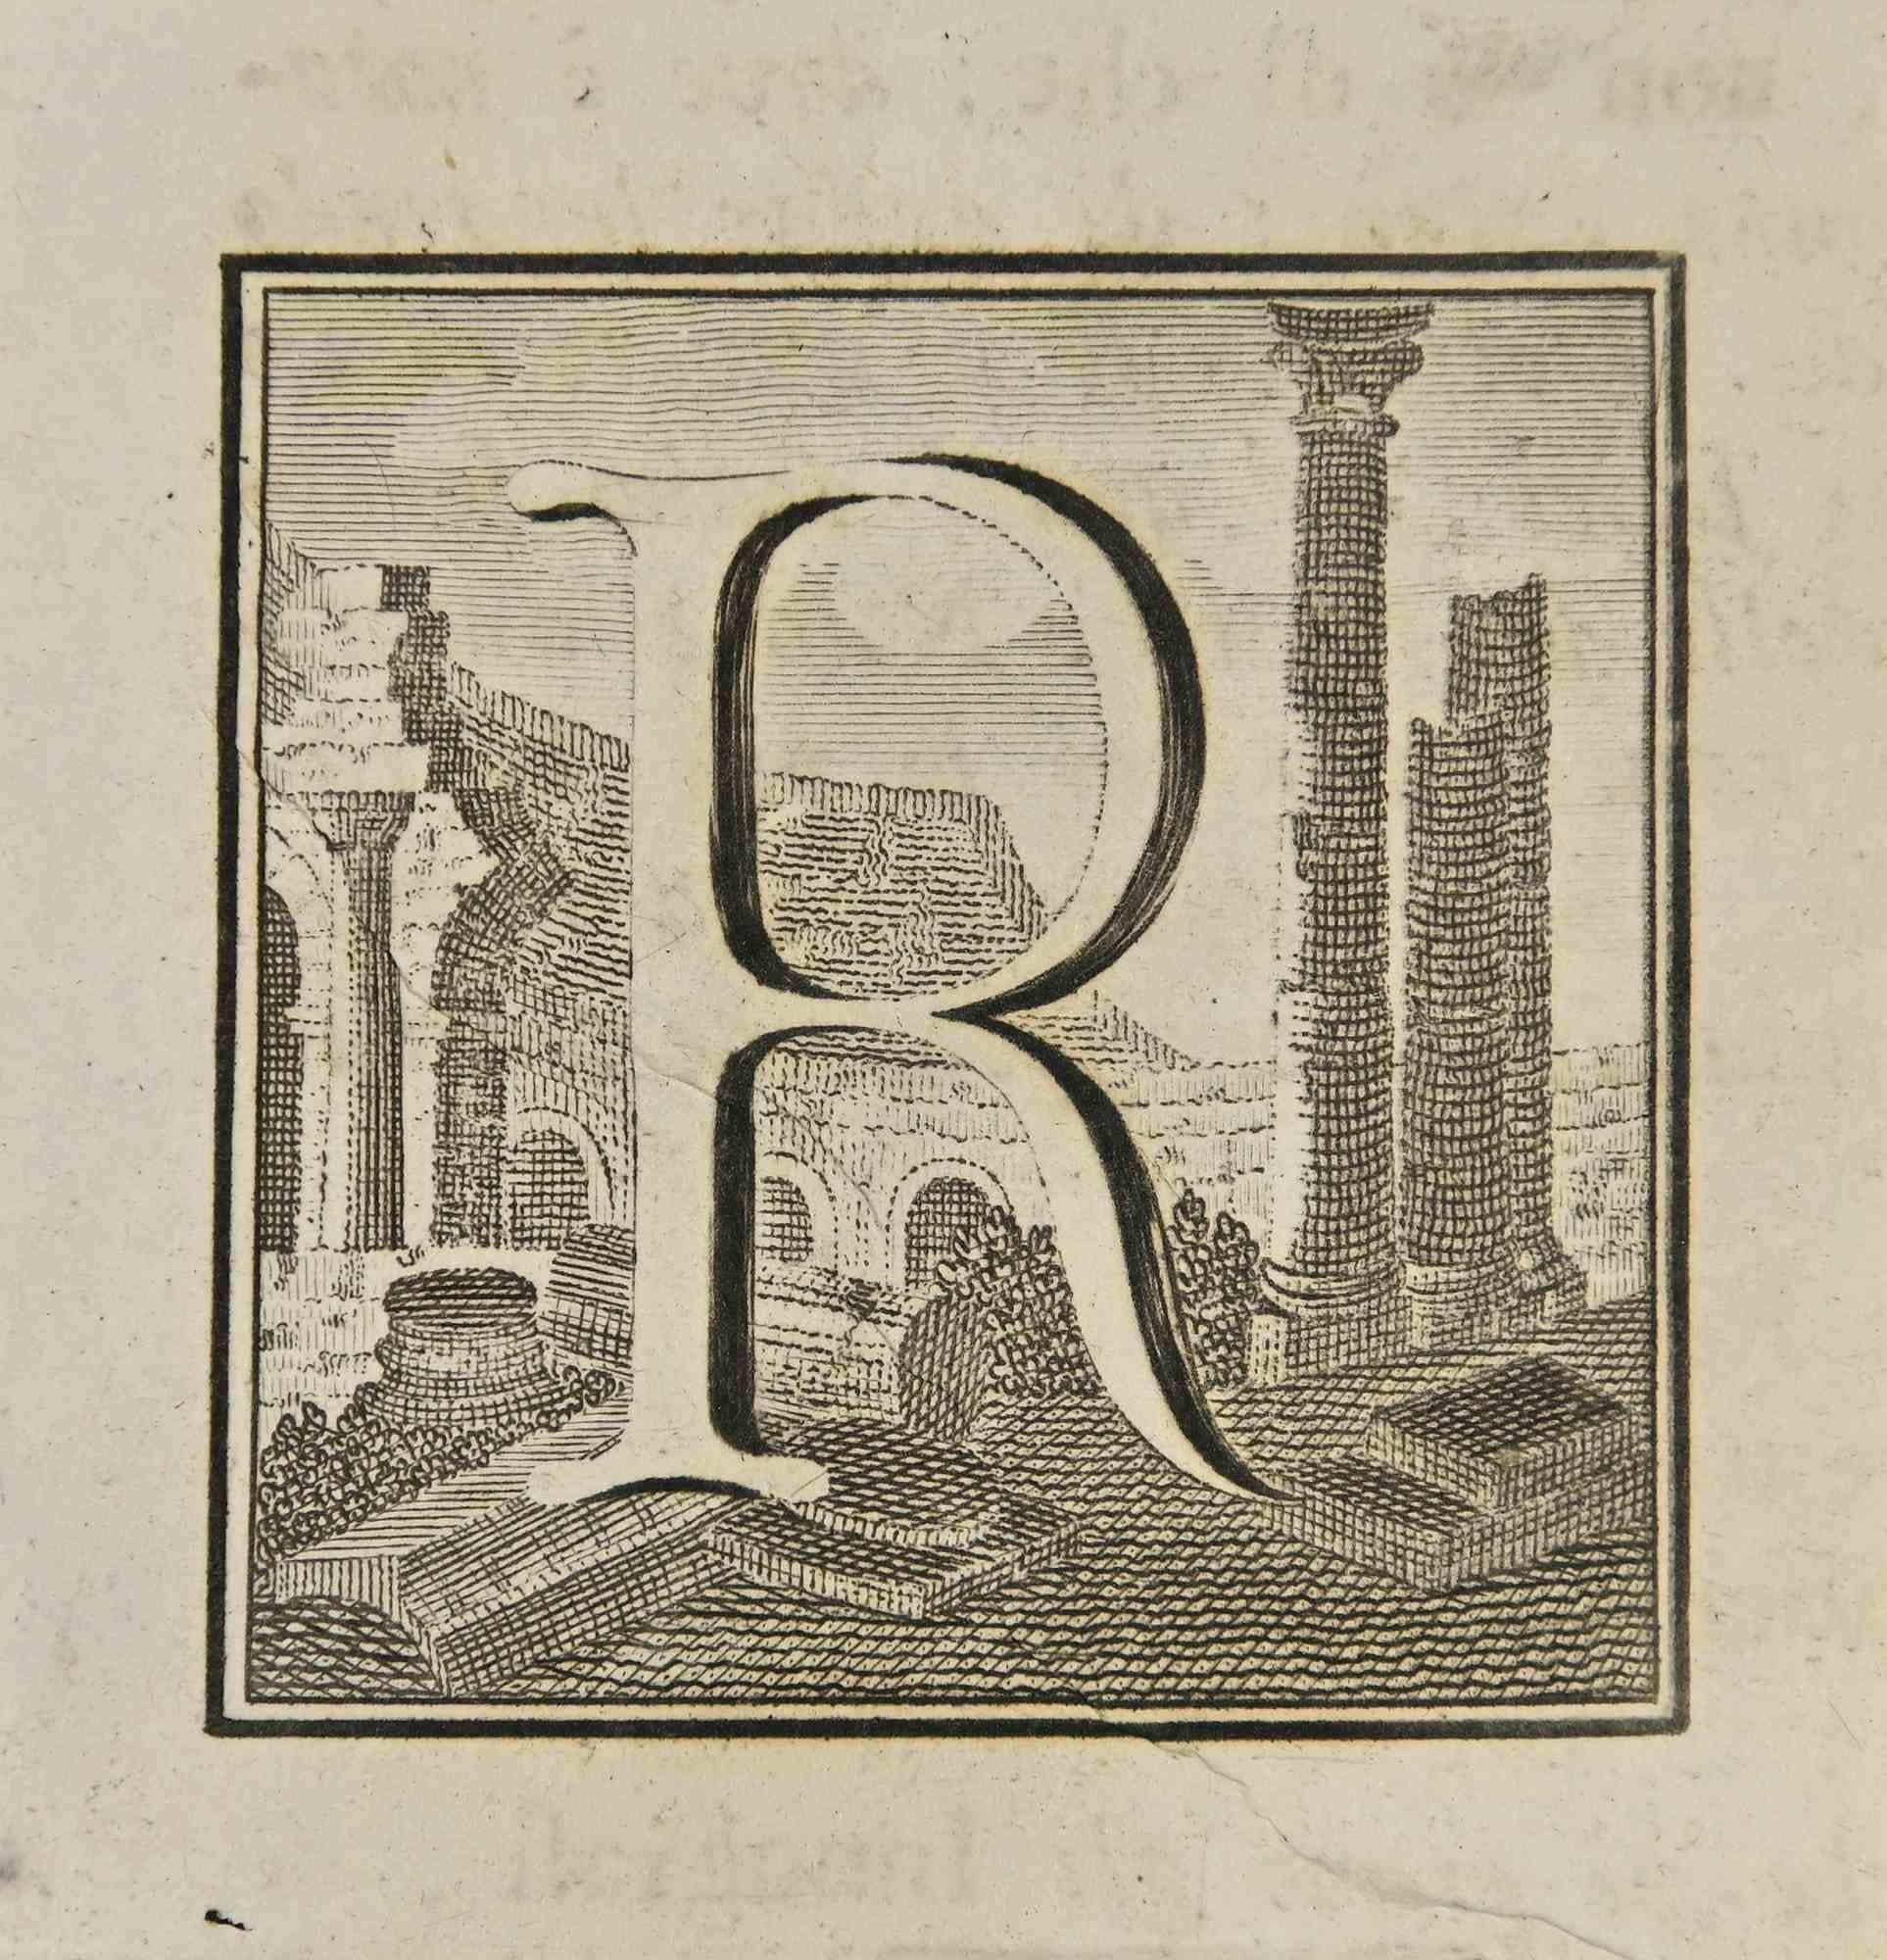 Lettre de l'alphabet R,  de la série "Antiquités d'Herculanum", est une gravure sur papier réalisée par Luigi Vanvitelli au 18ème siècle.

Bon état avec quelques petites rousseurs.

La gravure appartient à la suite d'estampes "Antiquités